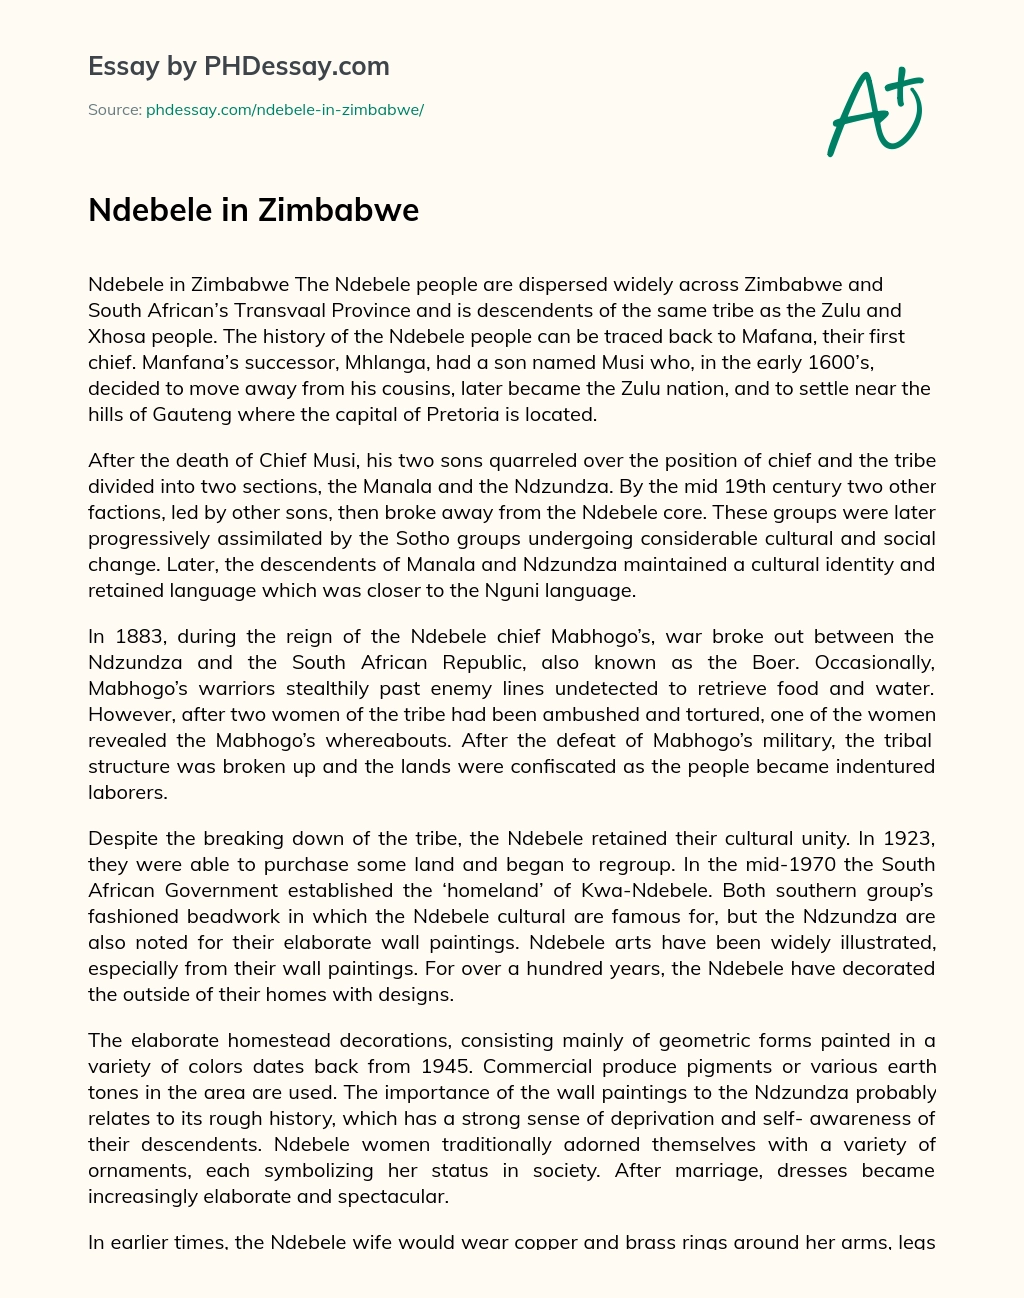 Ndebele in Zimbabwe essay